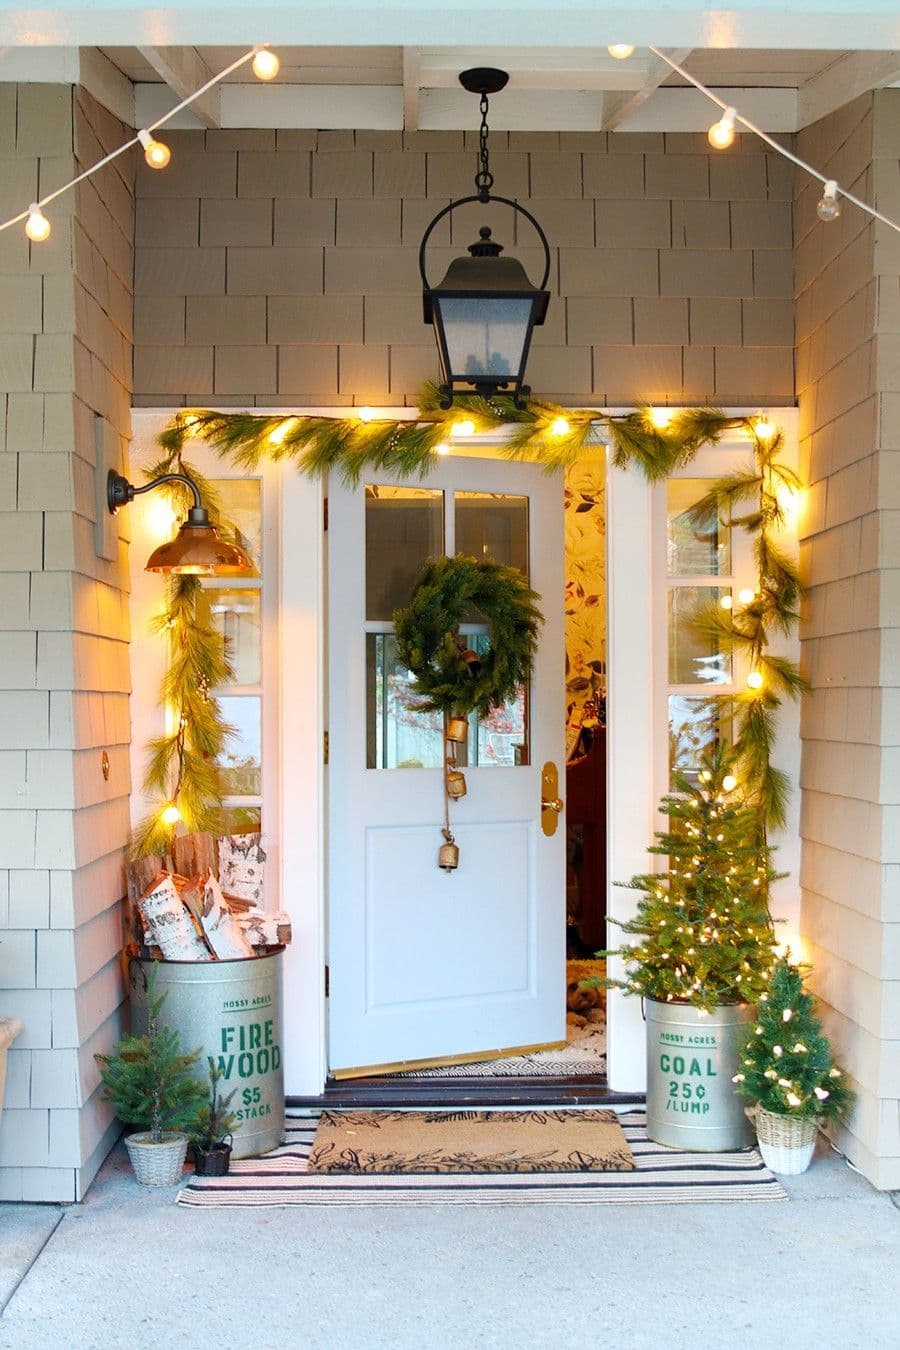 Entrada de una casa con una guirnalda de pino y luces encendidas alrededor de la puerta. La puerta es blanca y está abierta, tiene una corona navideña verde con campañas doradas colgando. Balde metálico con leña y otro balde con un pino